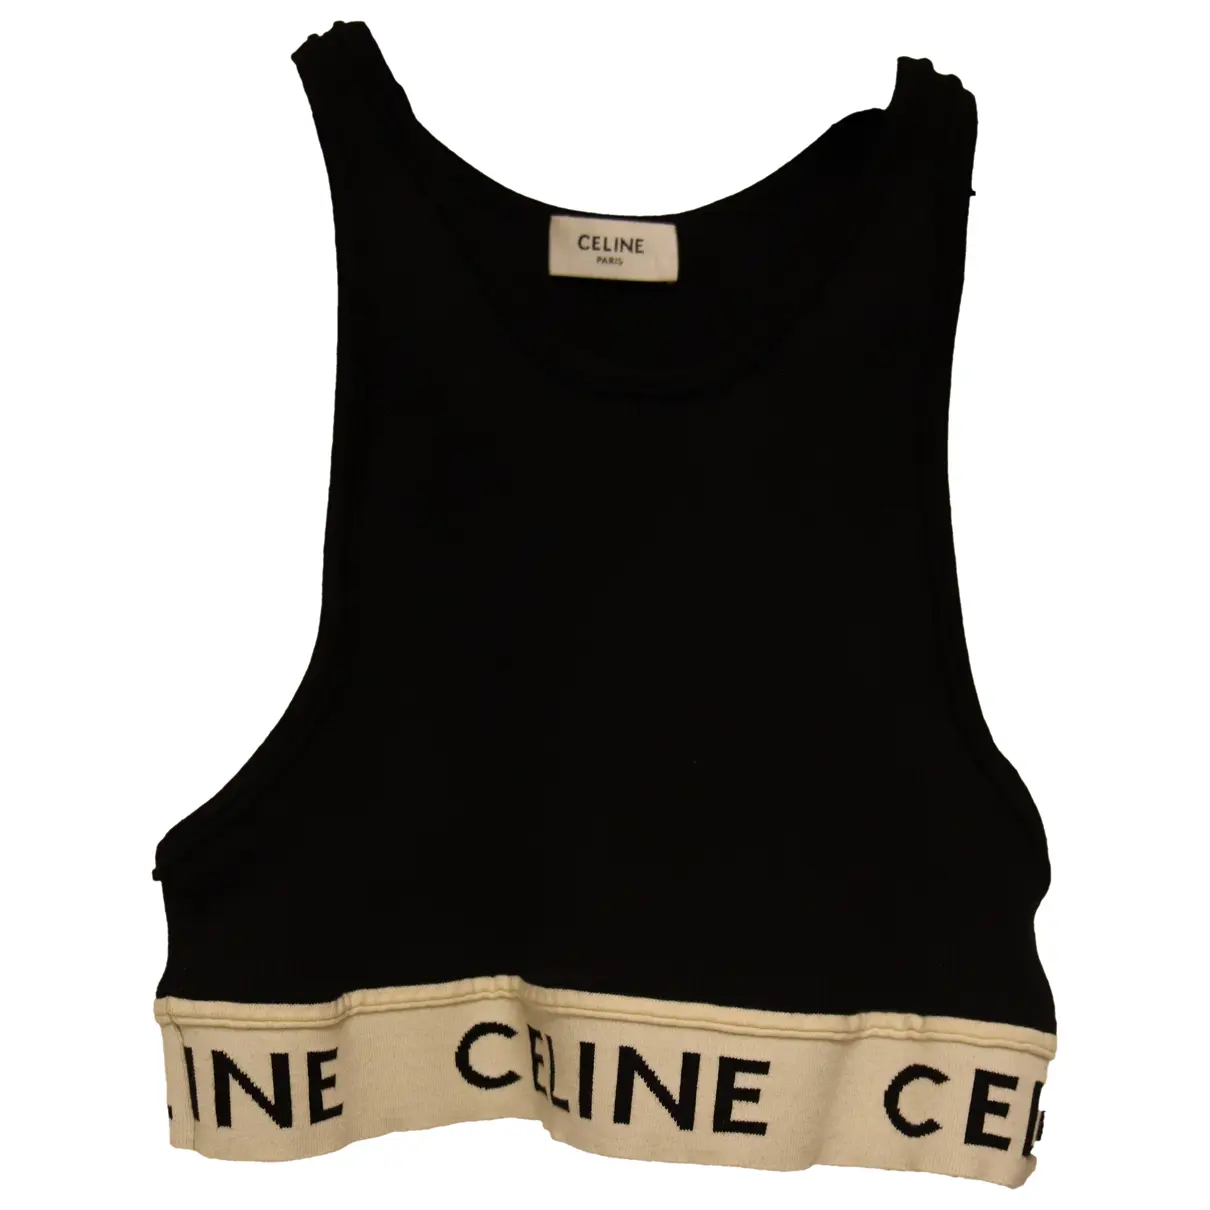 Celine sports bra in athletic knit - CELINE